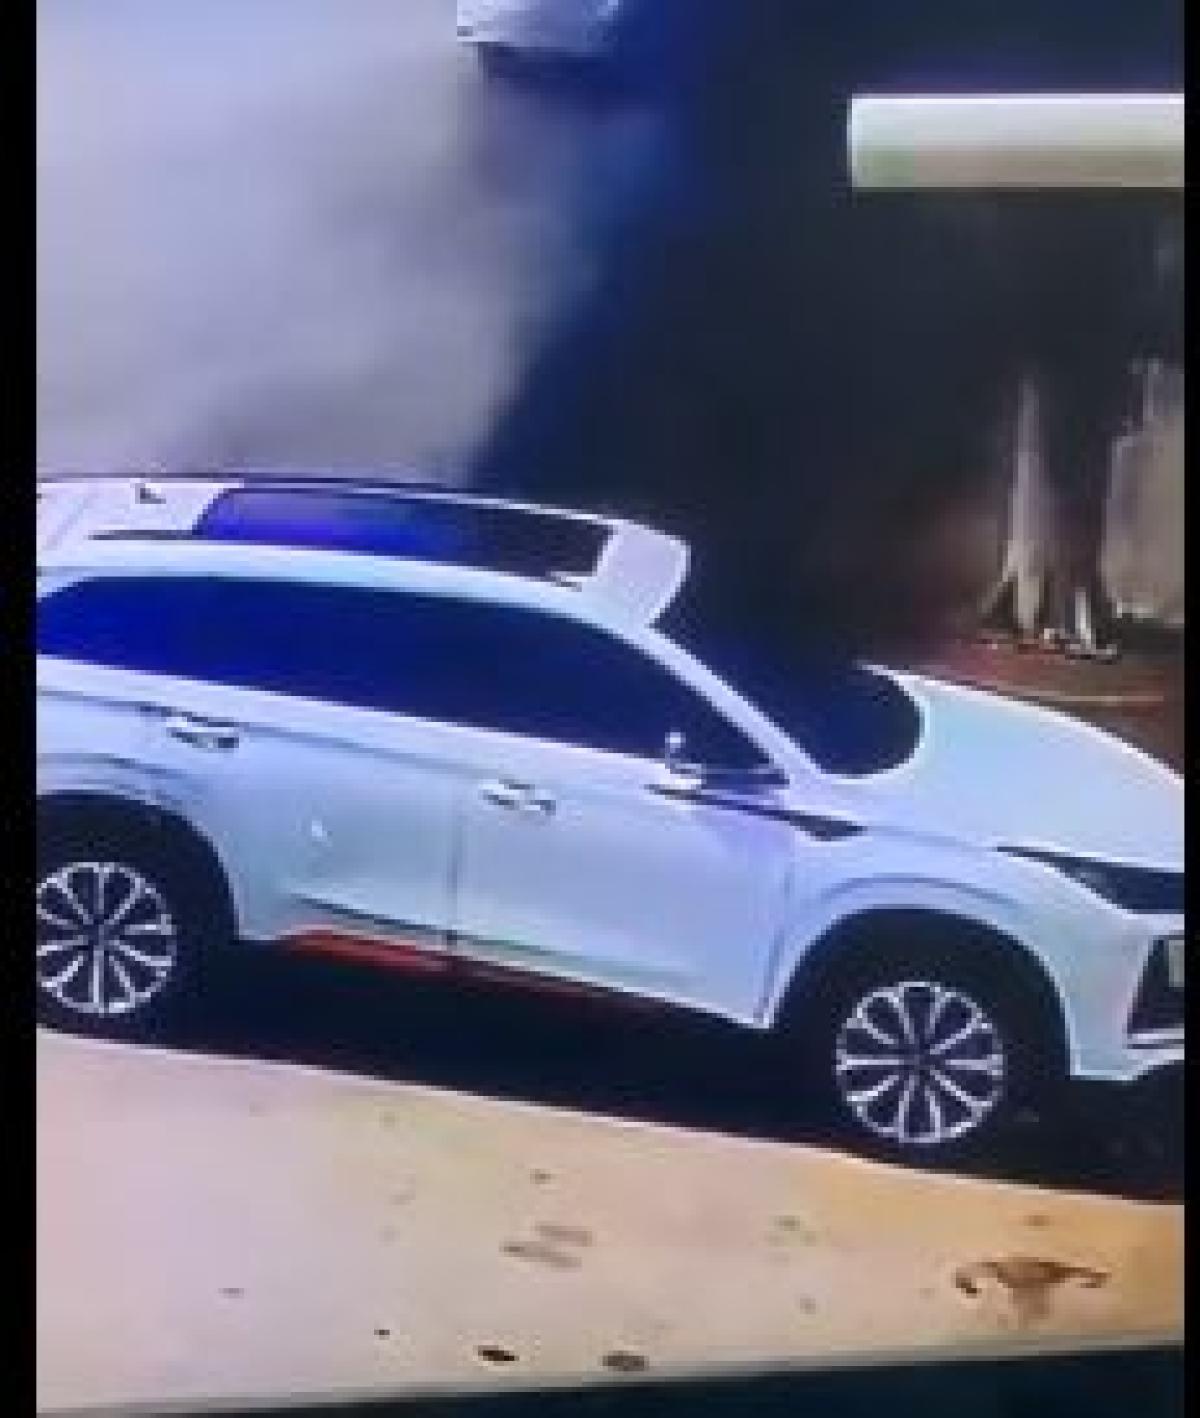 شاهد.. شخص يشعل النار عمدًا في مركبة بجازان وسط مطالبات بالتحقيق
محليات